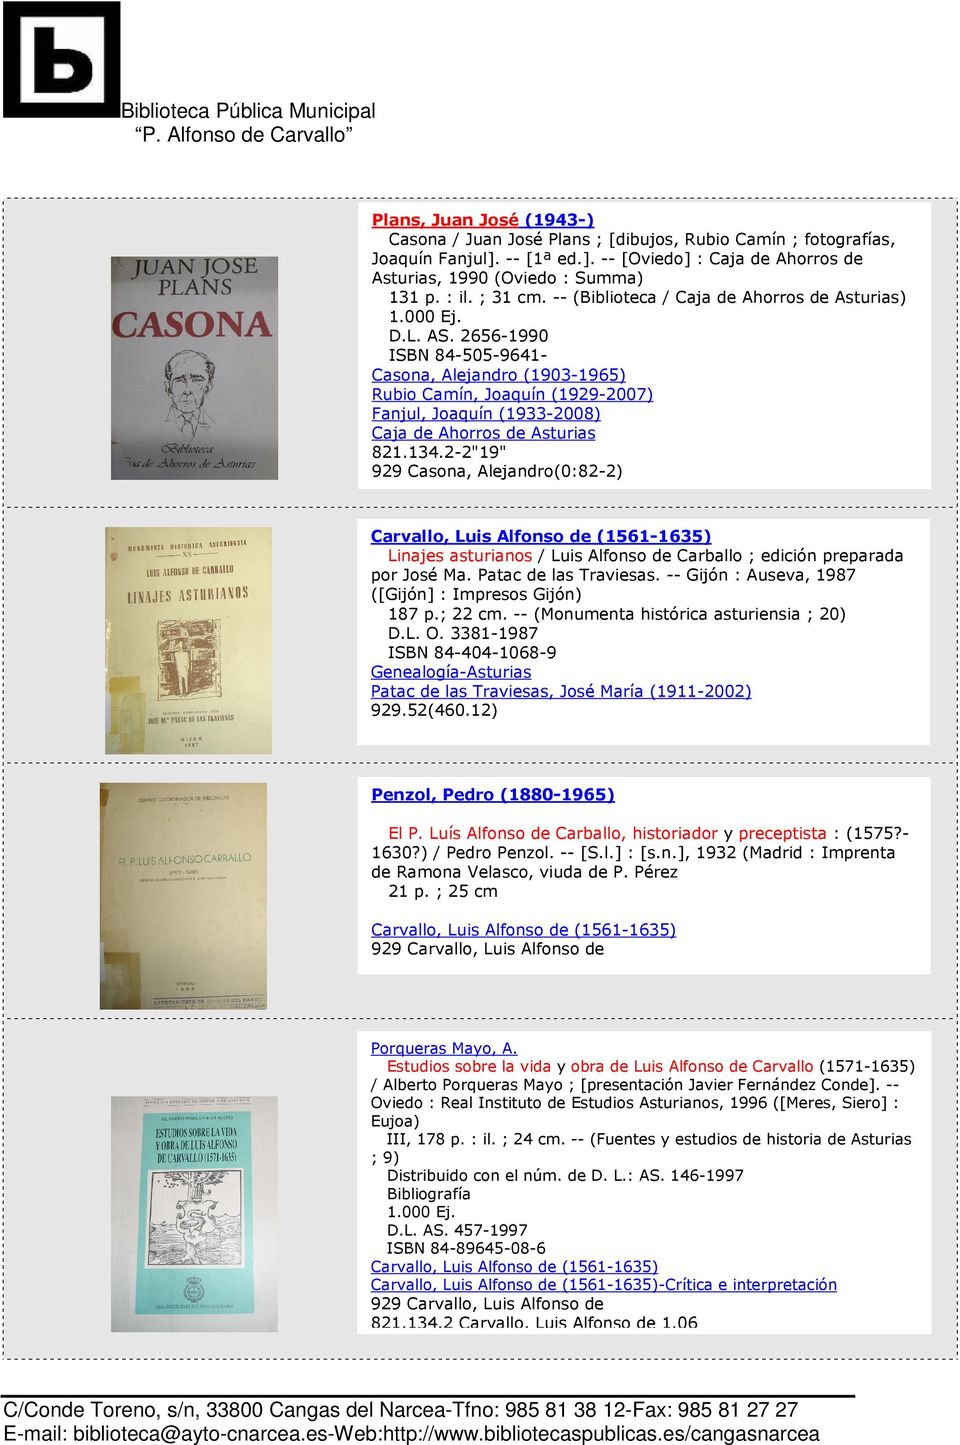 2656-1990 ISBN 84-505-9641- Casona, Alejandro (1903-1965) Rubio Camín, Joaquín (1929-2007) Fanjul, Joaquín (1933-2008) Caja de Ahorros de Asturias 821.134.